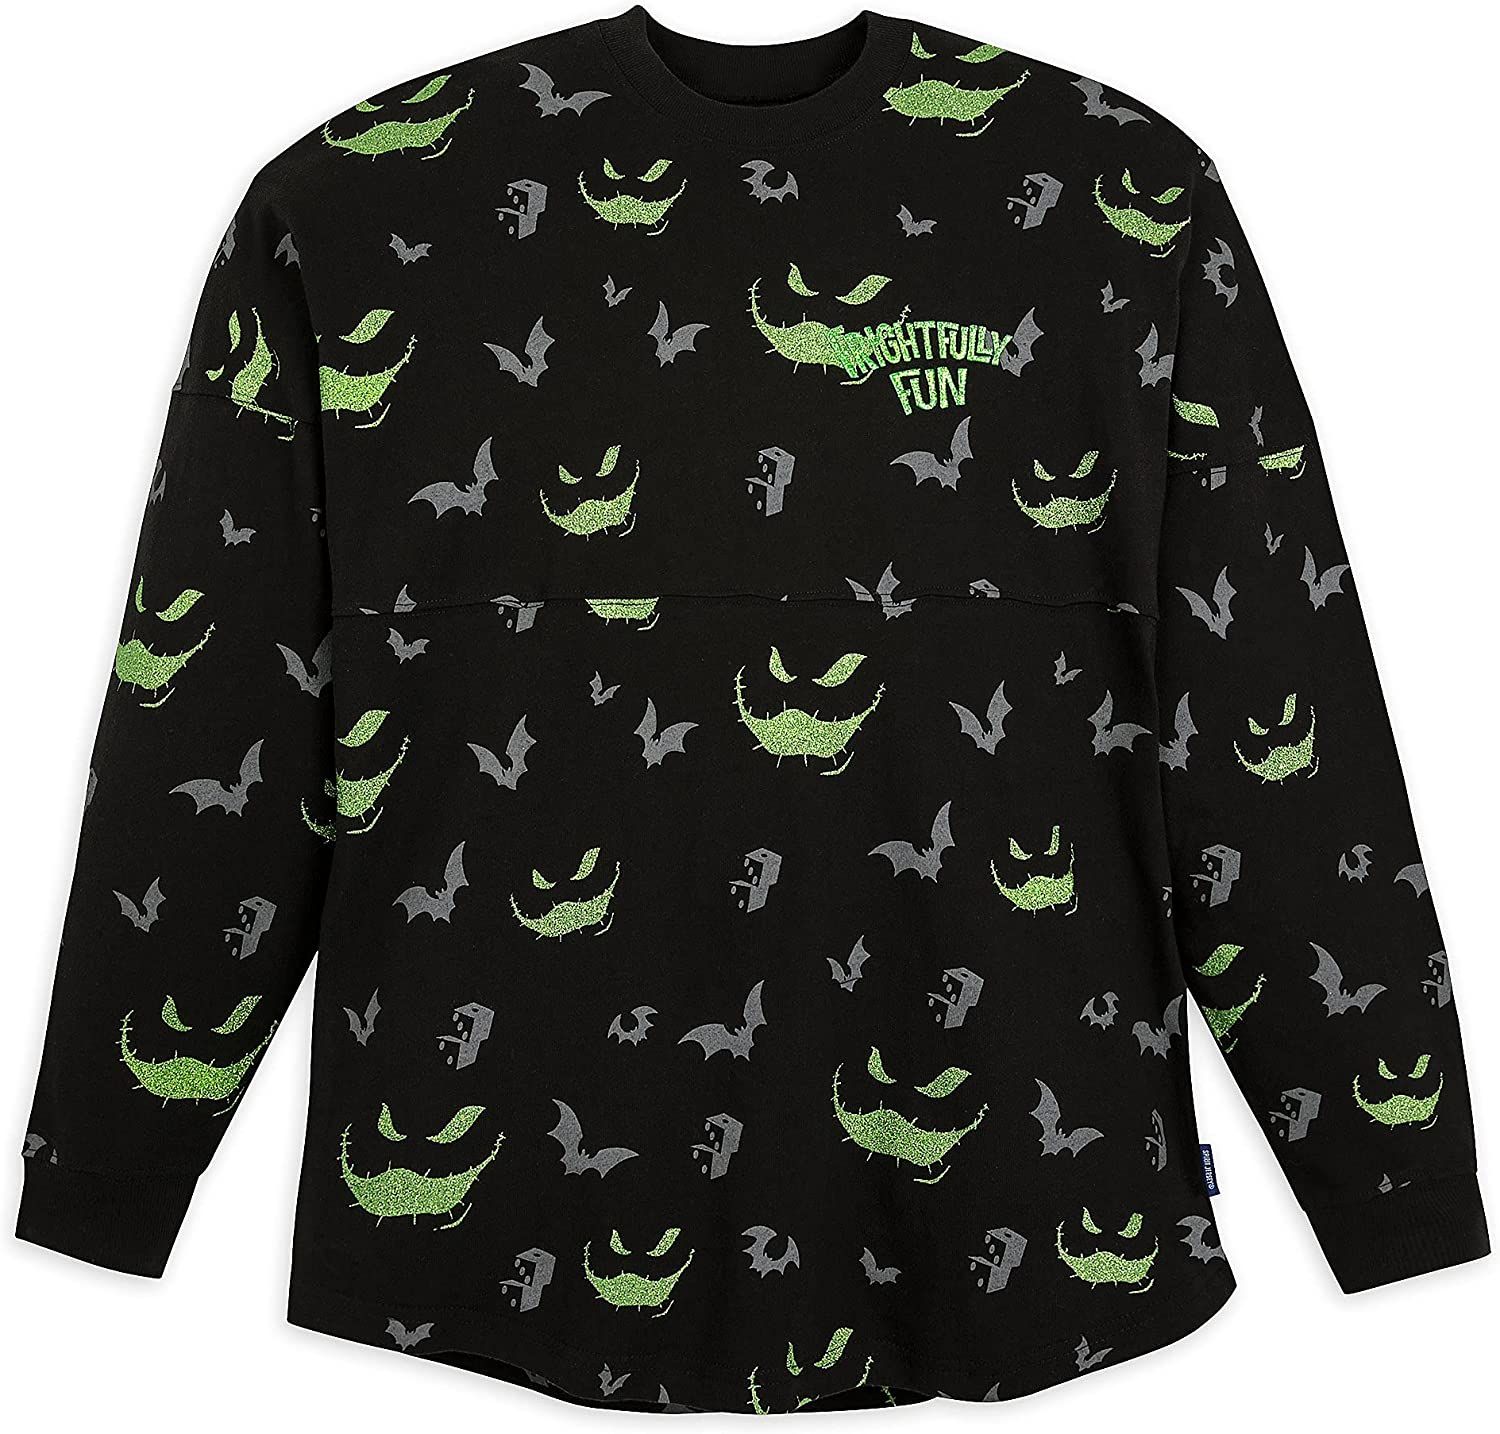 Oogie Boogie Shirt Spirit Jersey  Tim Burton's Halloween Shirt